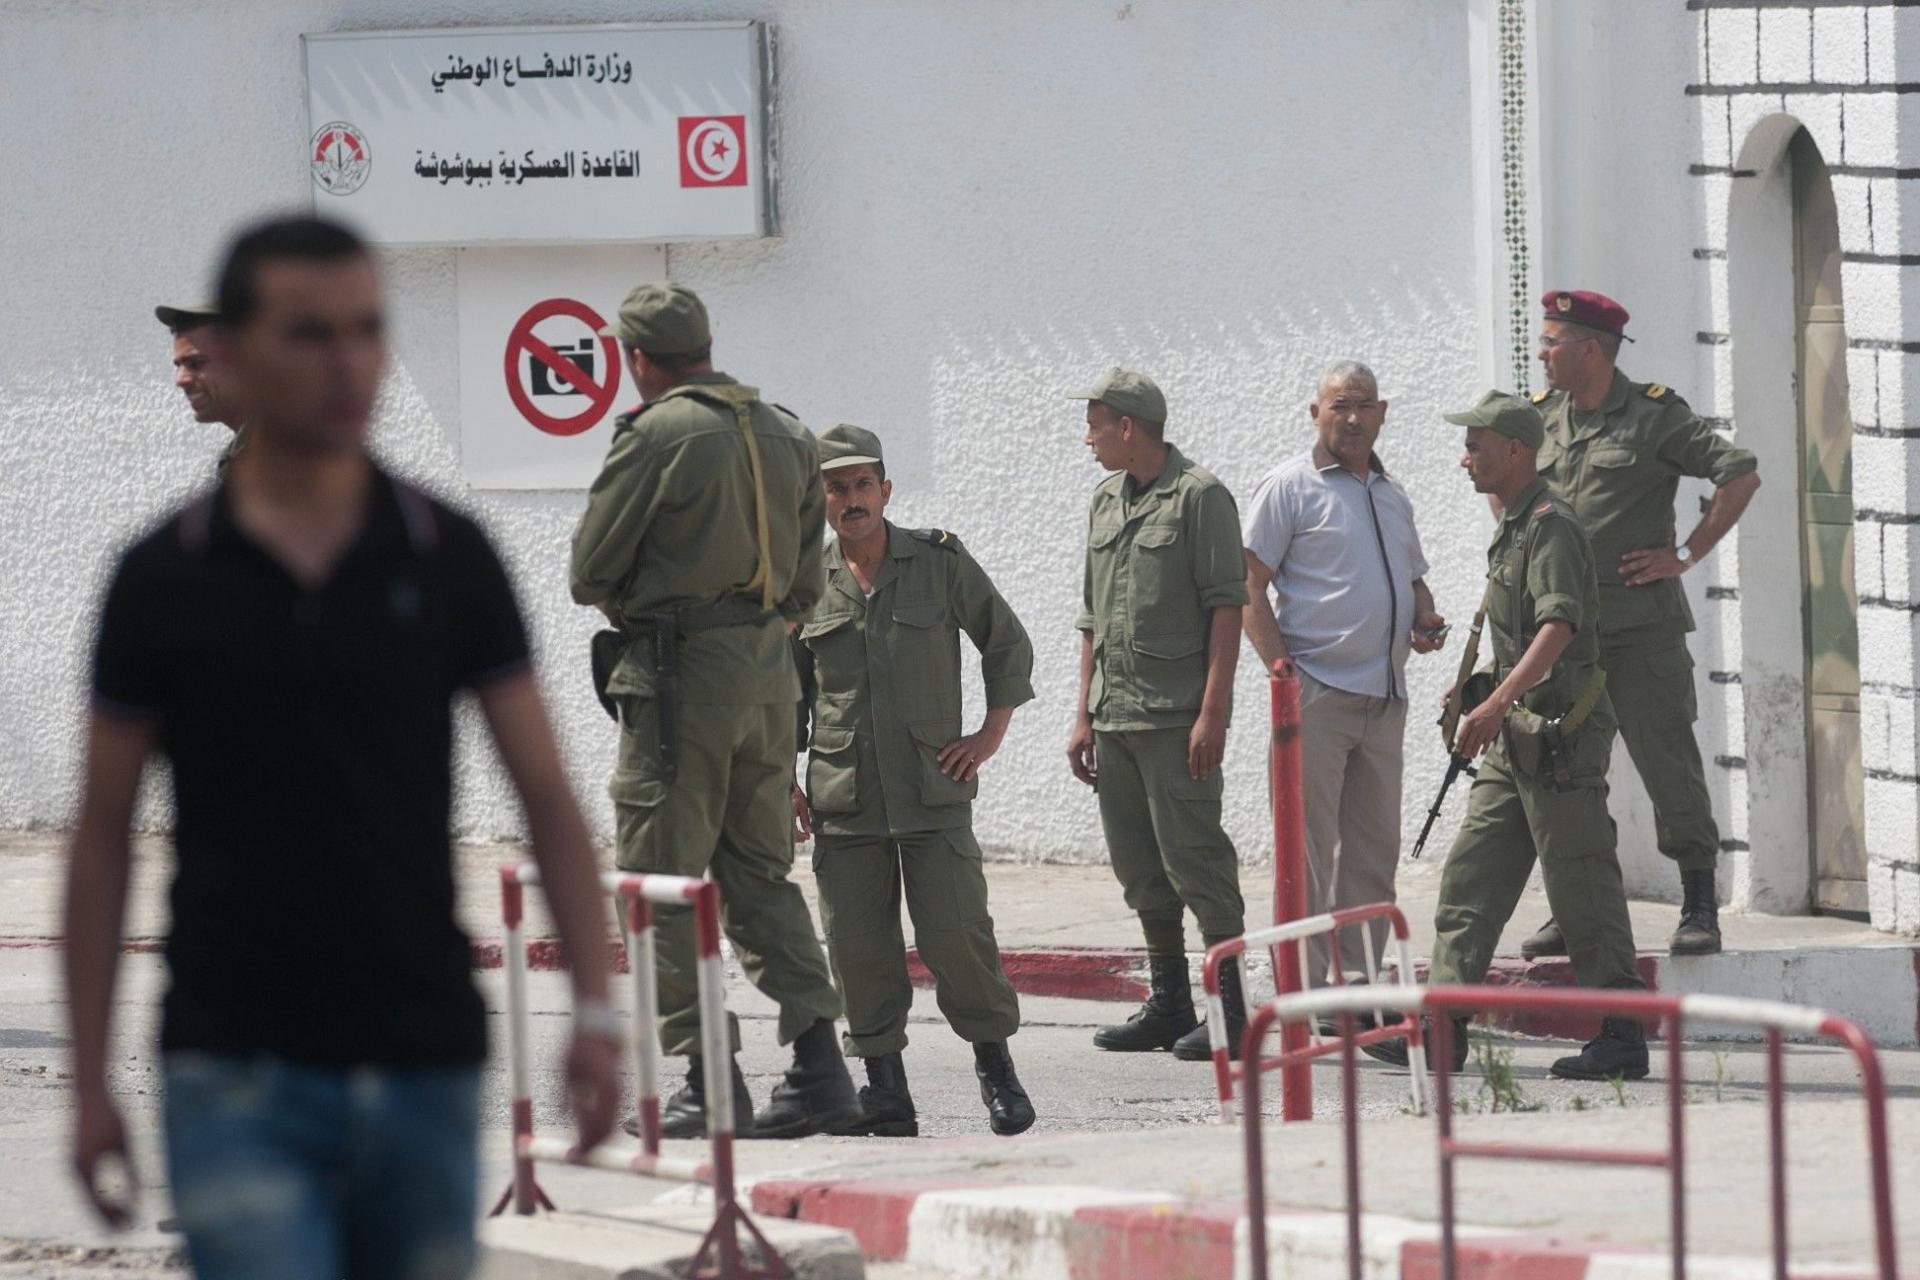 القاعدة العسكرية ببوشوشة من أكبر الحاميات المتمركزة بغرب العاصمة التونسية